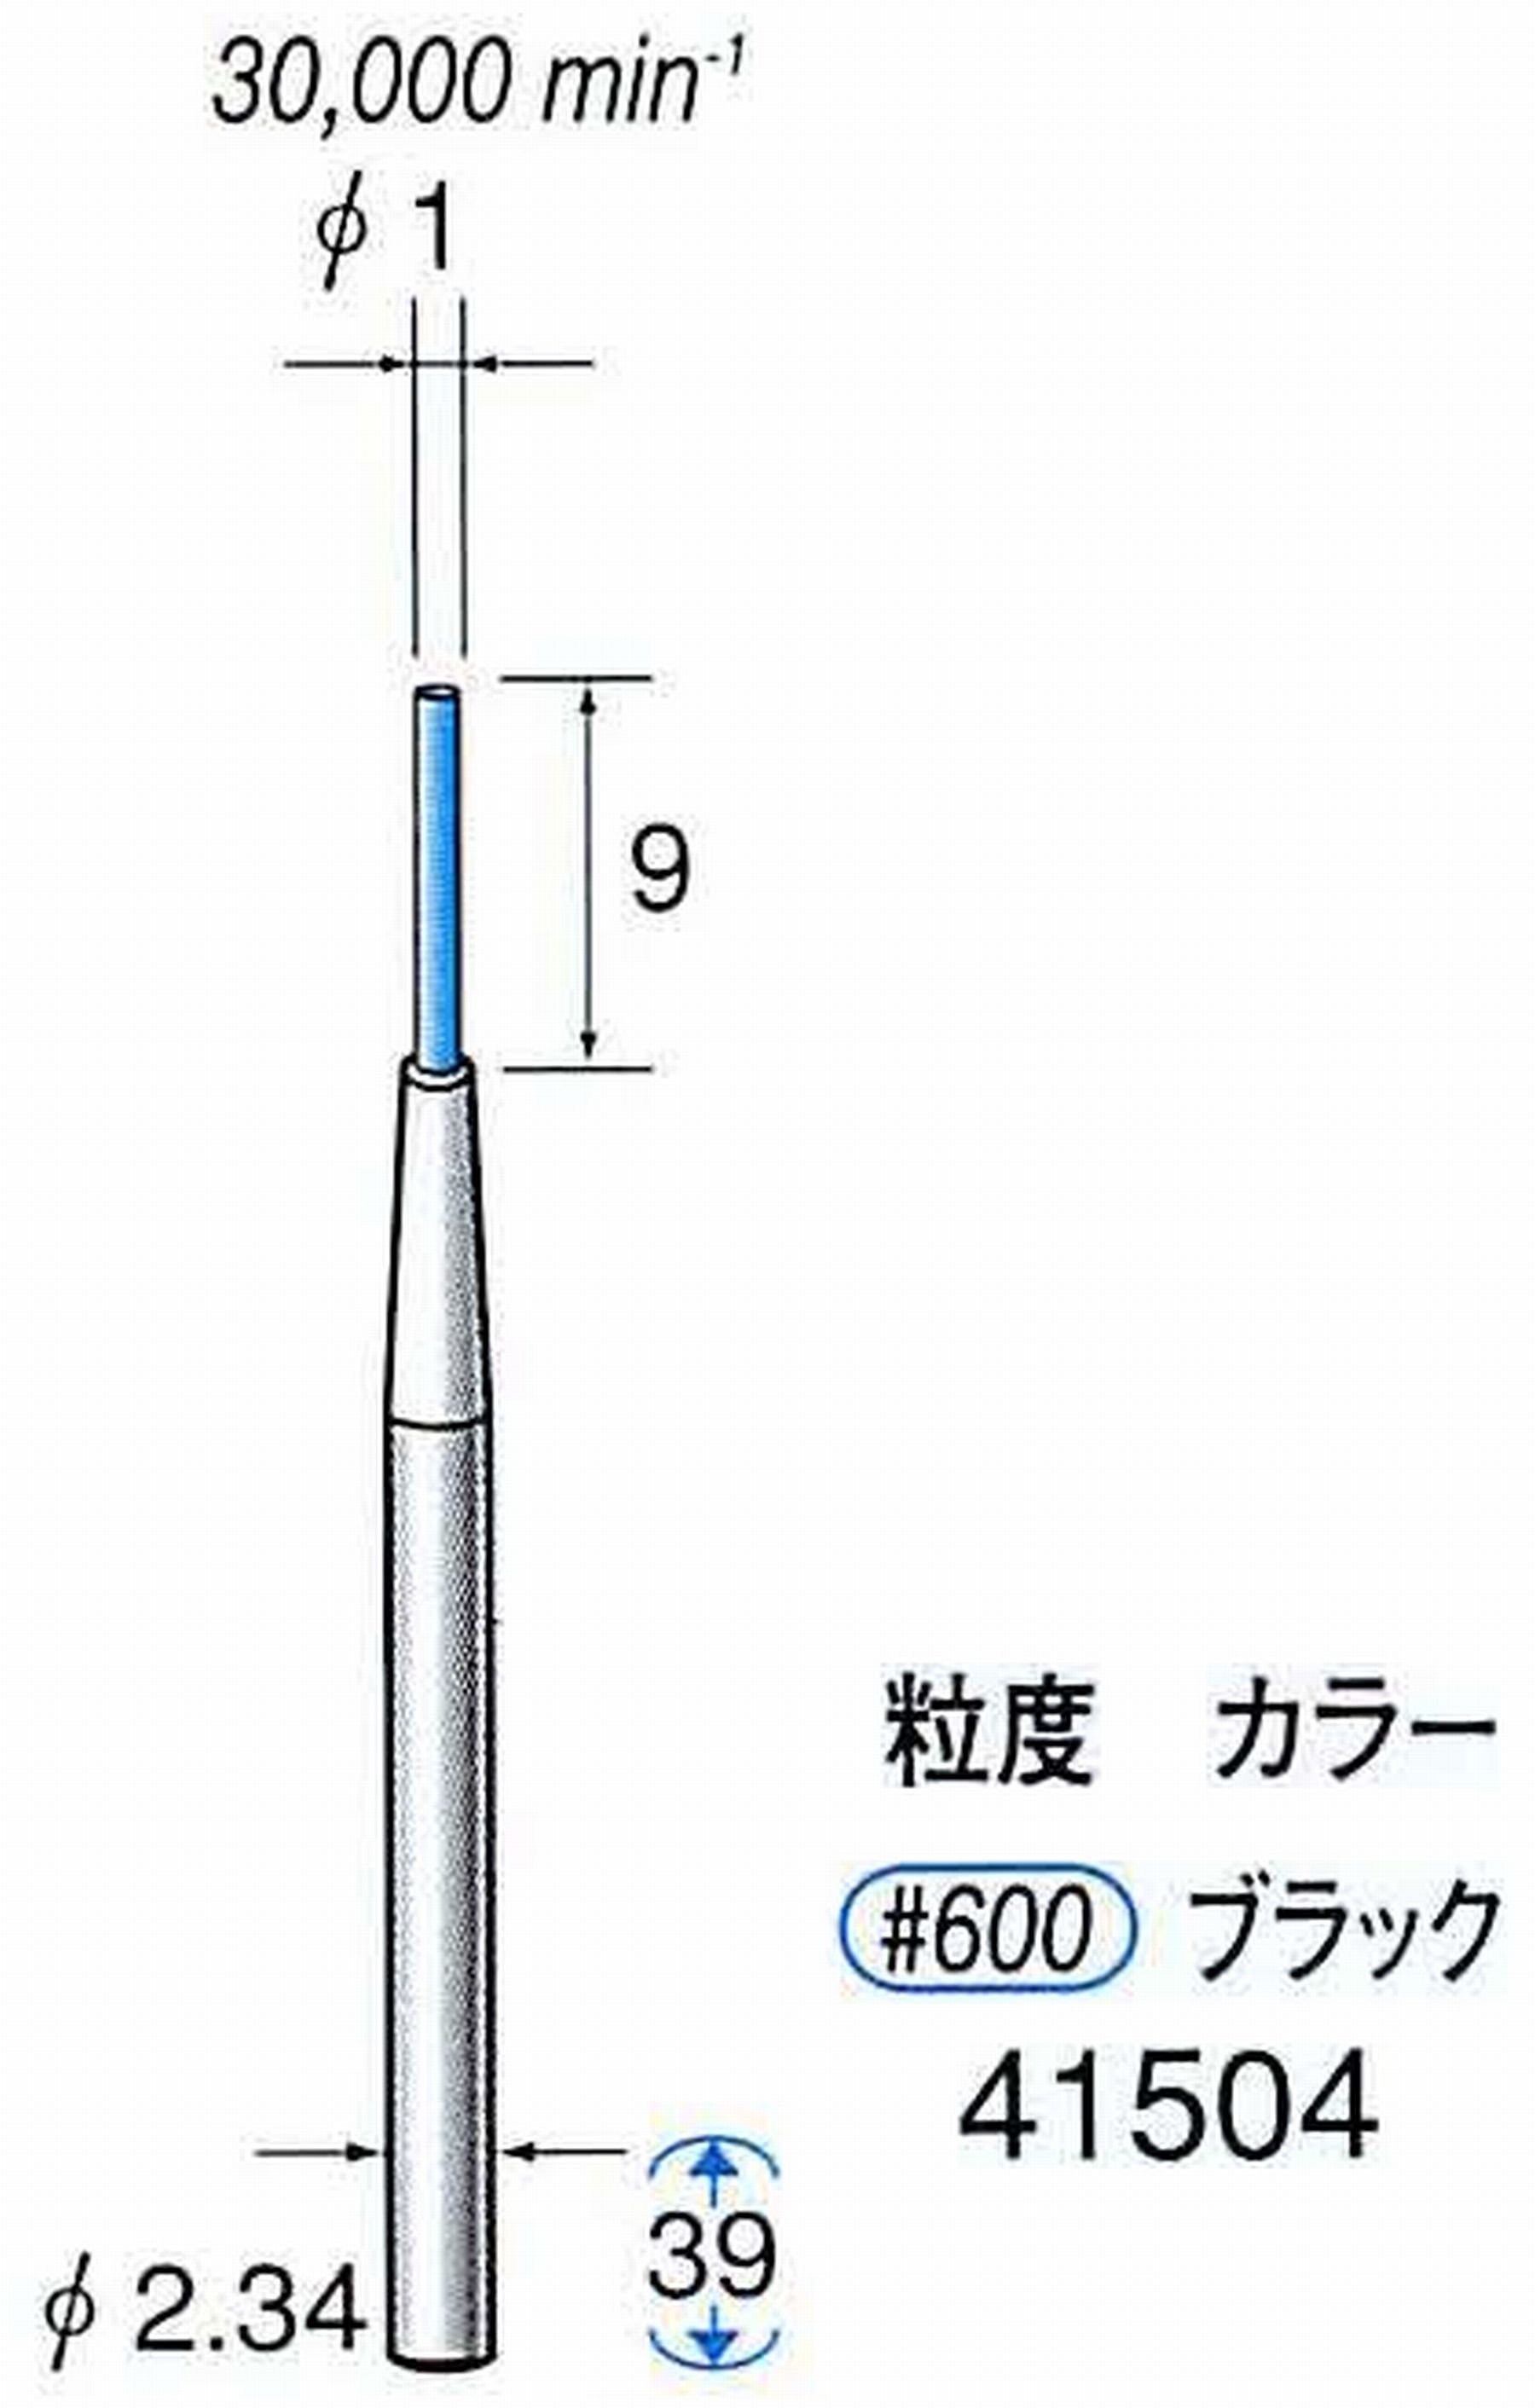 ナカニシ/NAKANISHI セラファイバー精密軸付砥石(カラー ブラック) 軸径(シャンク) φ2.34mm 41504